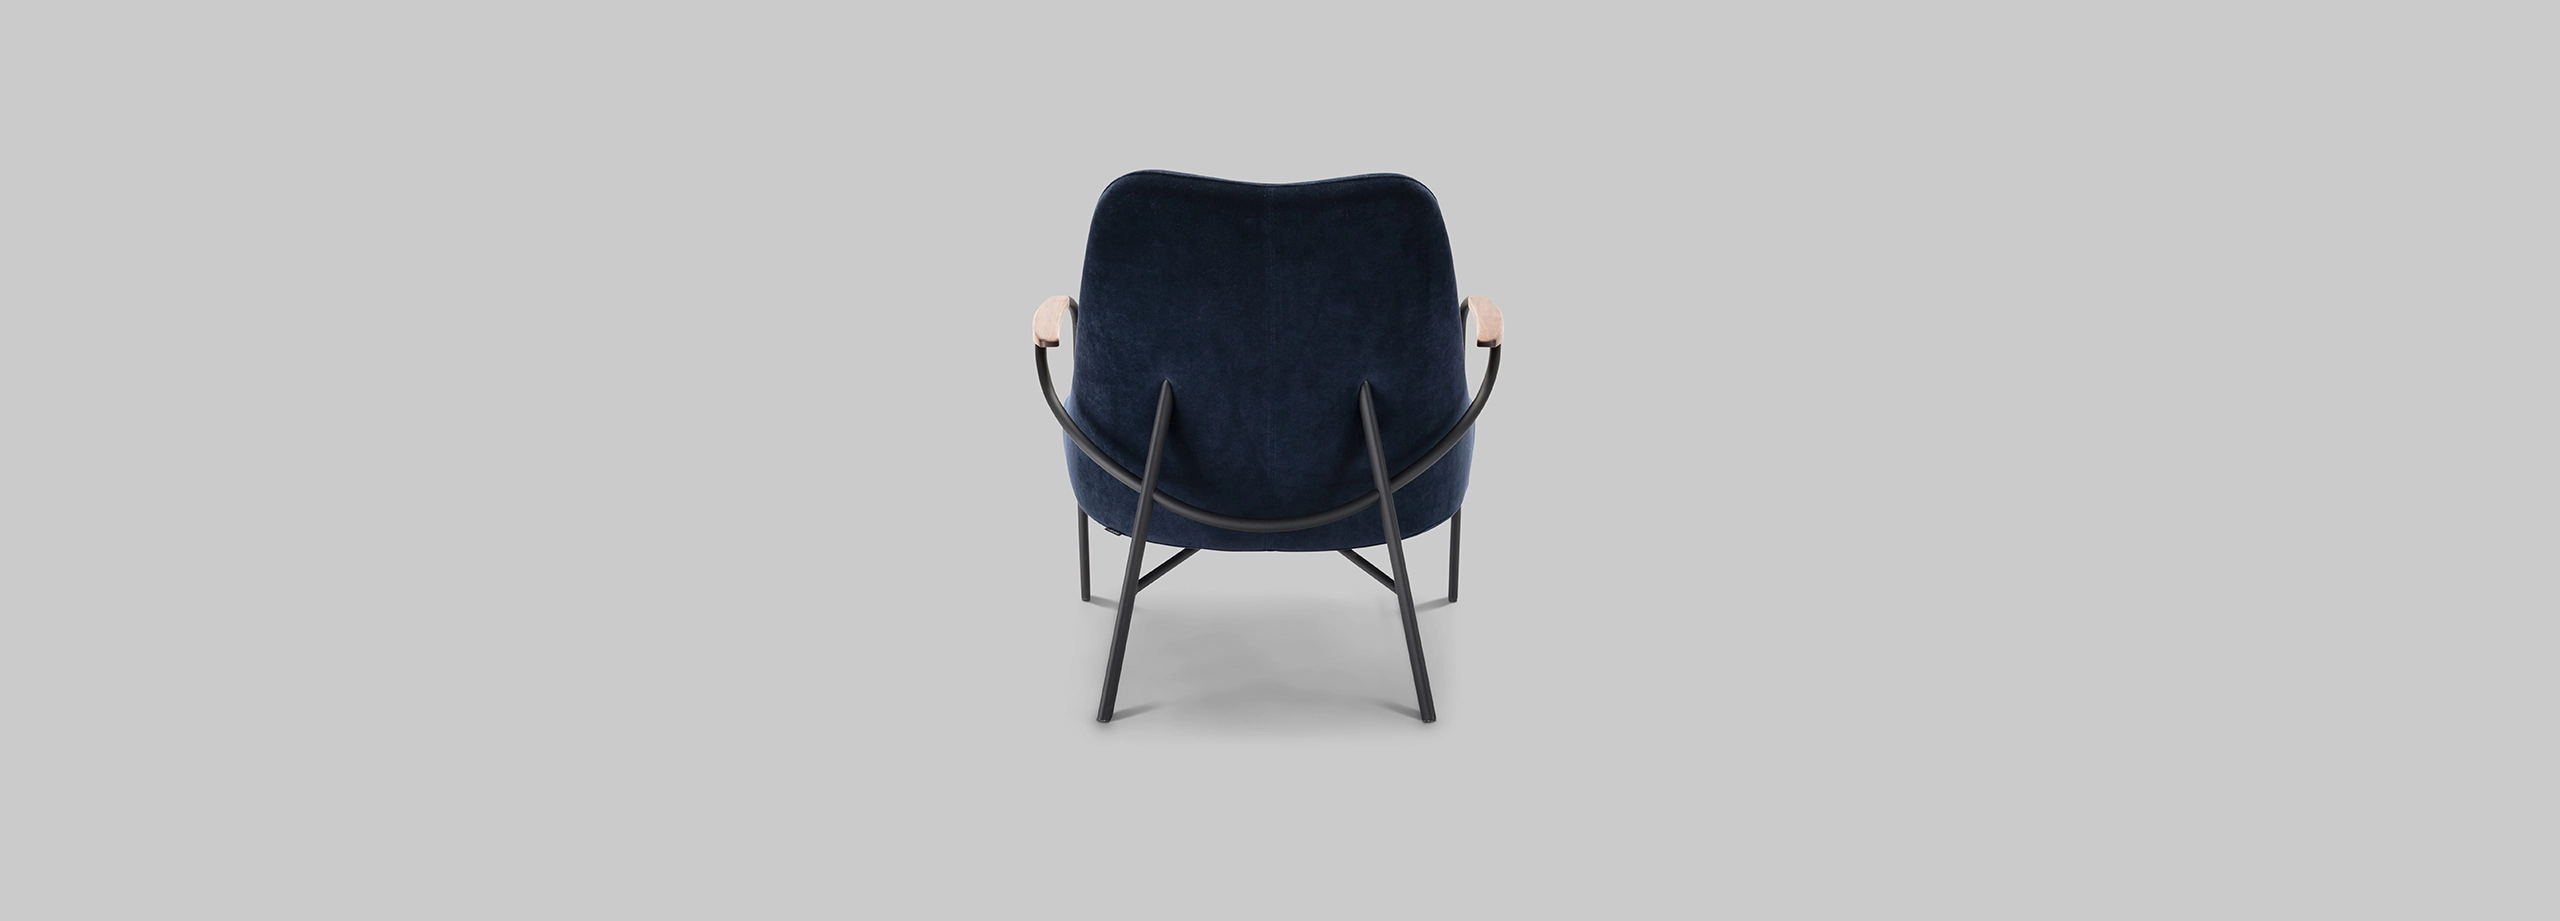 Harvink Blazoen fauteuil fluweel blauw